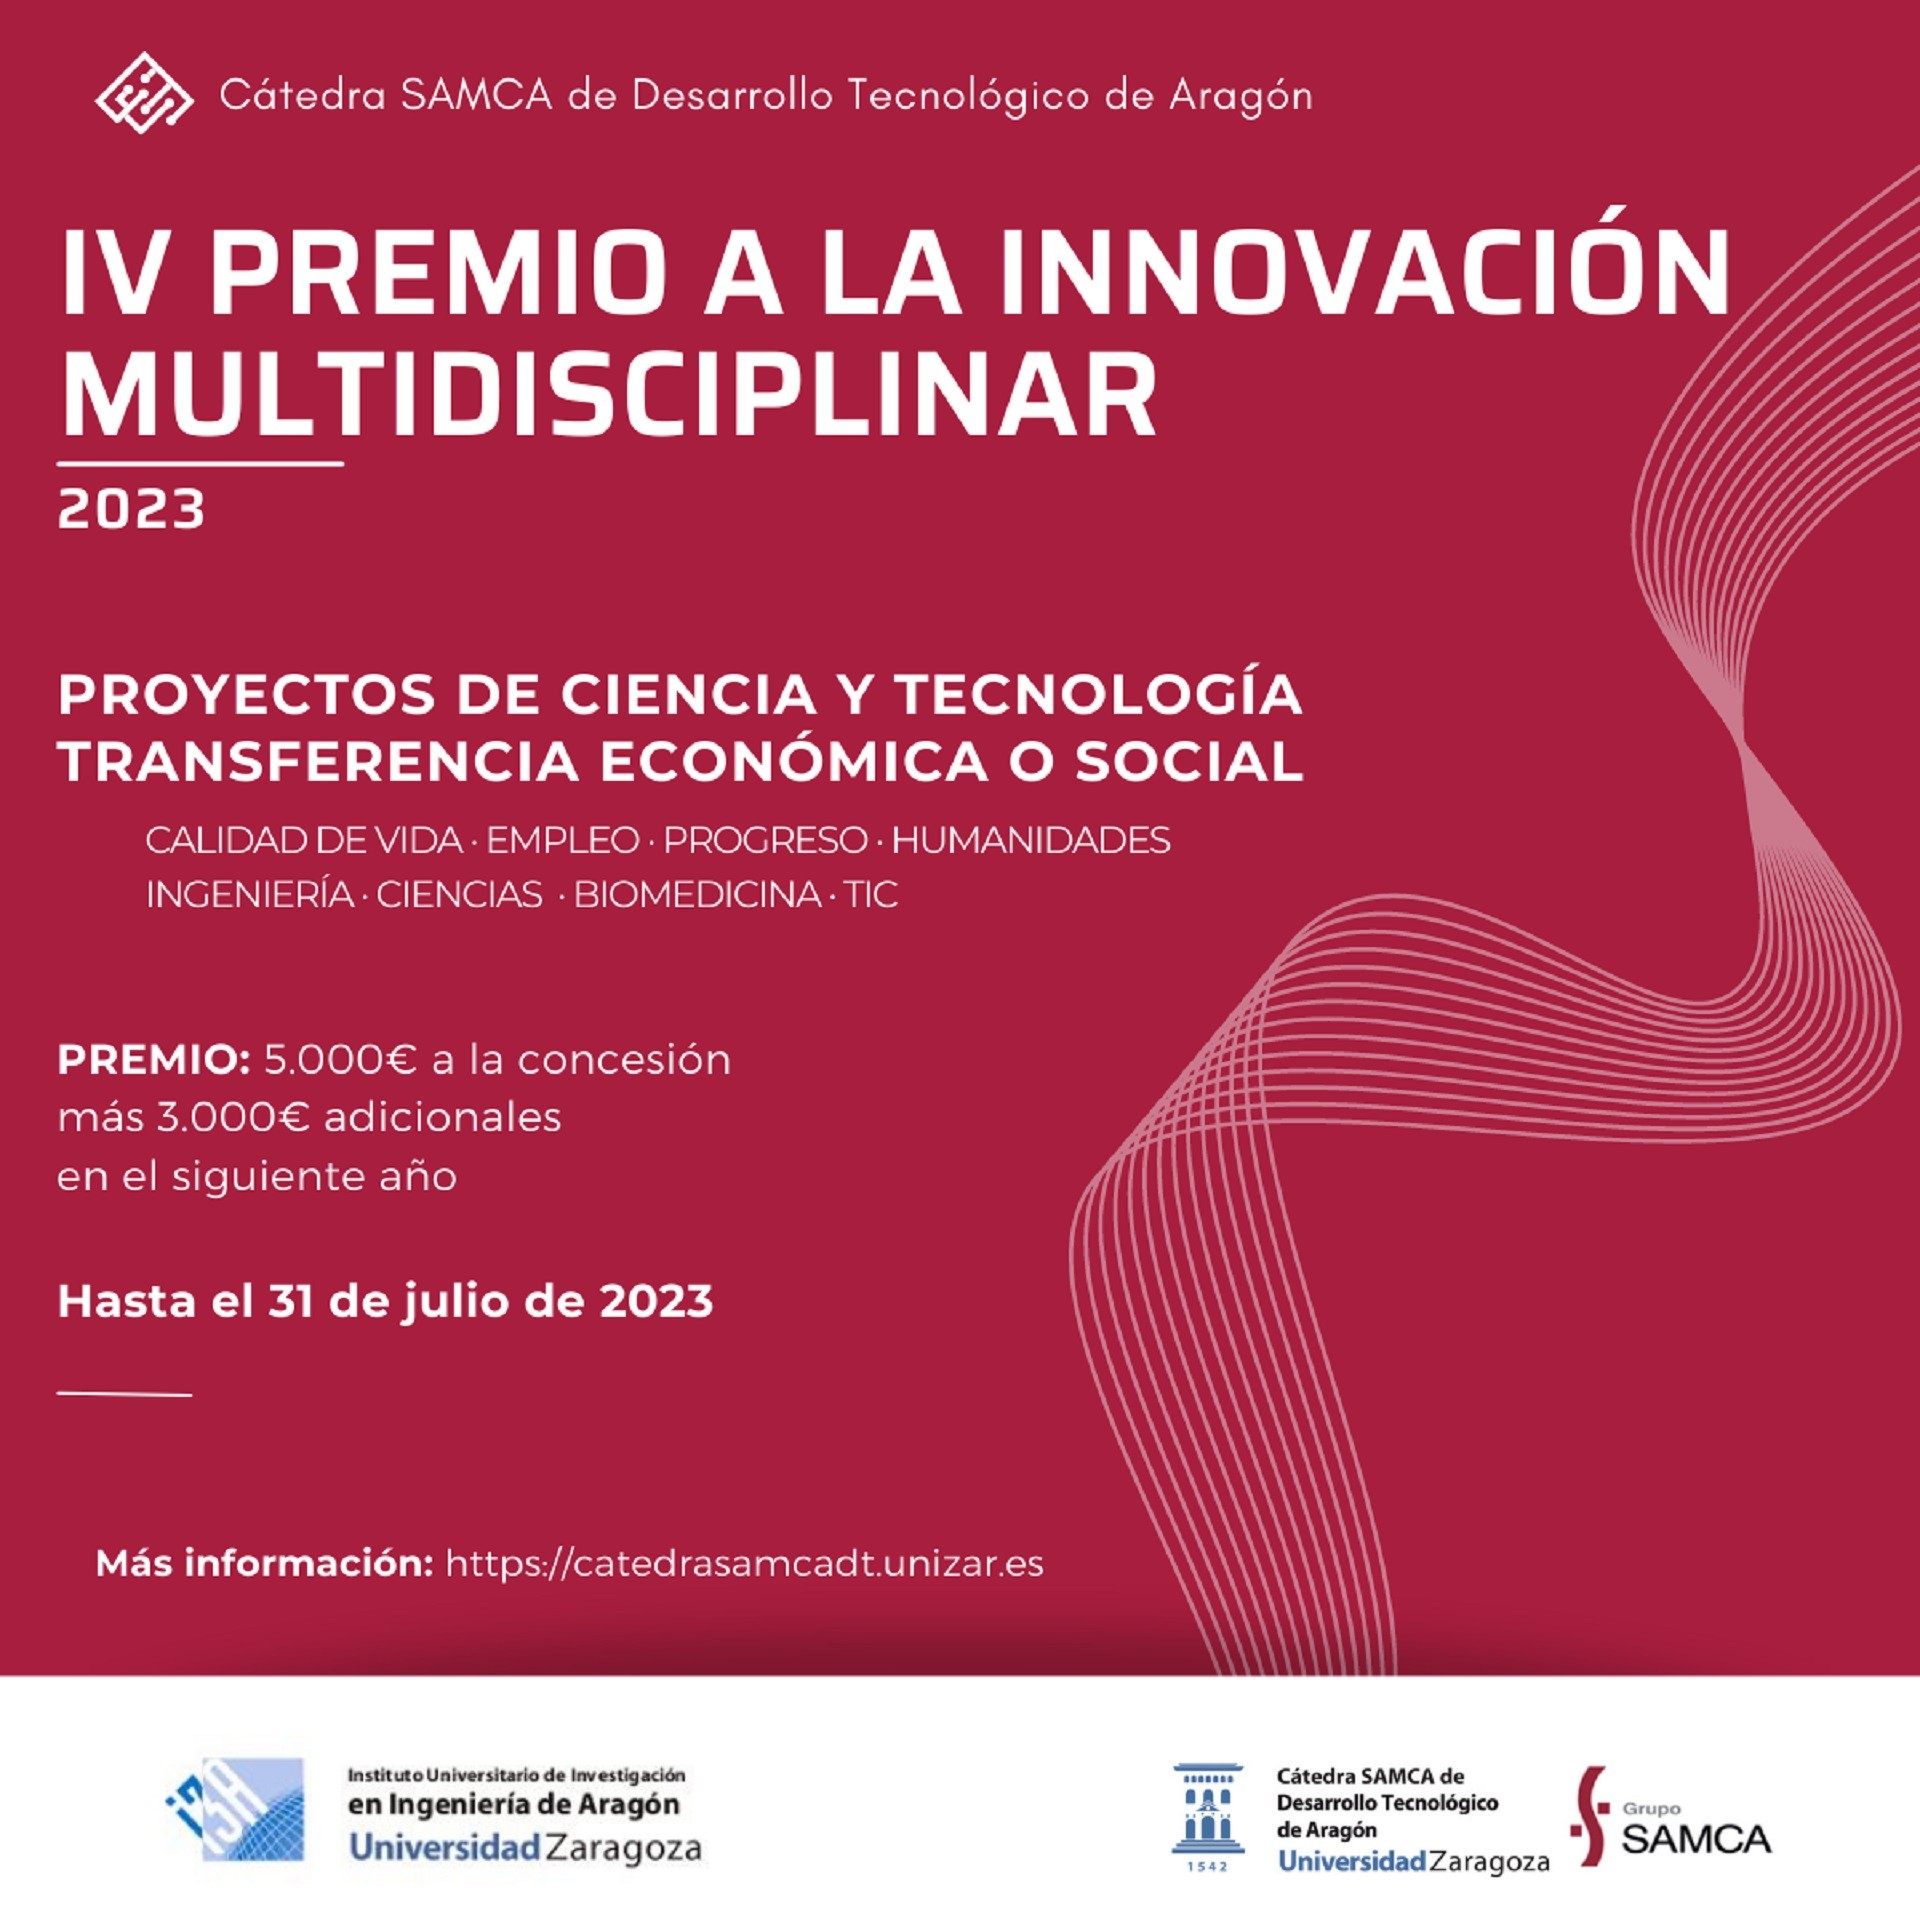 La Cátedra SAMCA de Desarrollo Tecnológico convoca una nueva edición del Premio a la Innovación Multidisciplinar